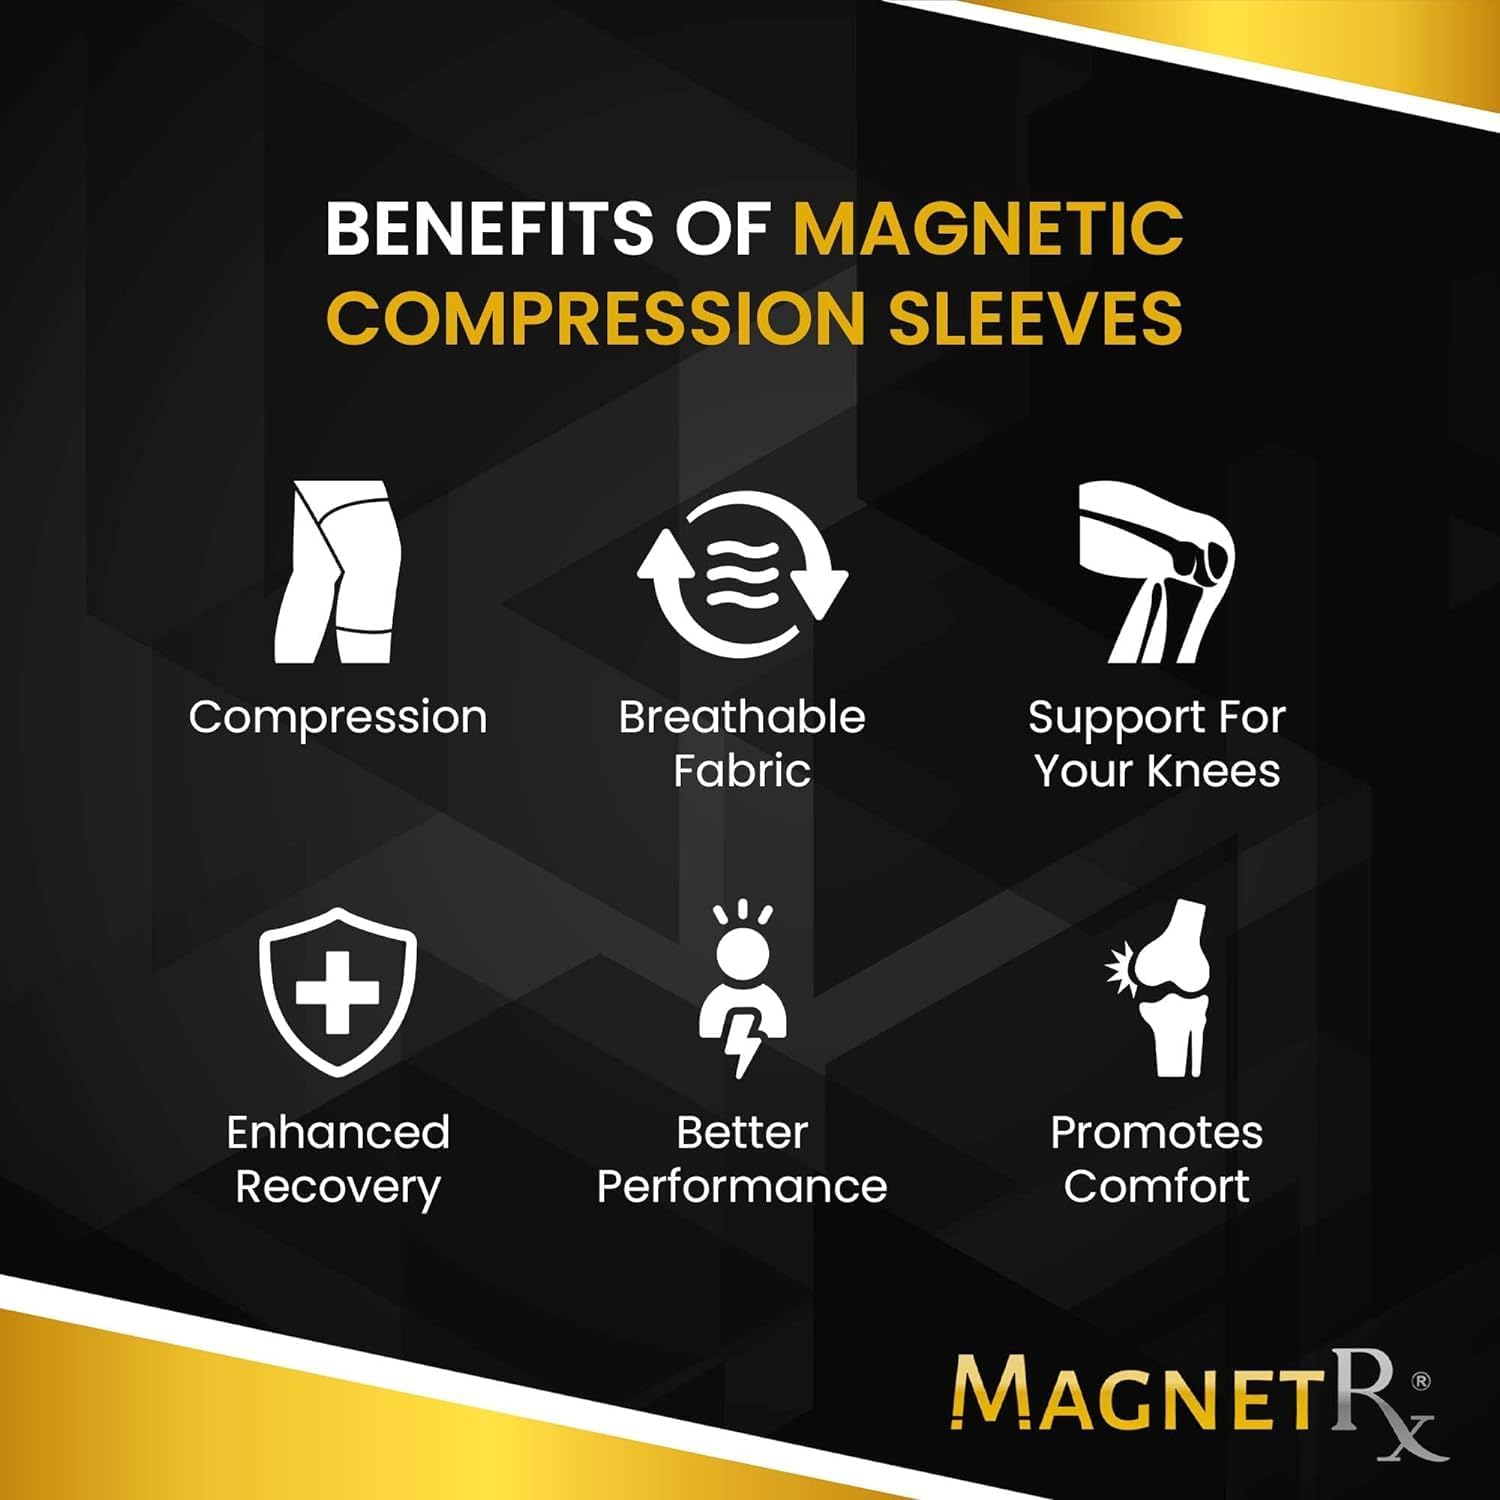 MagnetRX® Magnetic Knee Compression Sleeve -0900